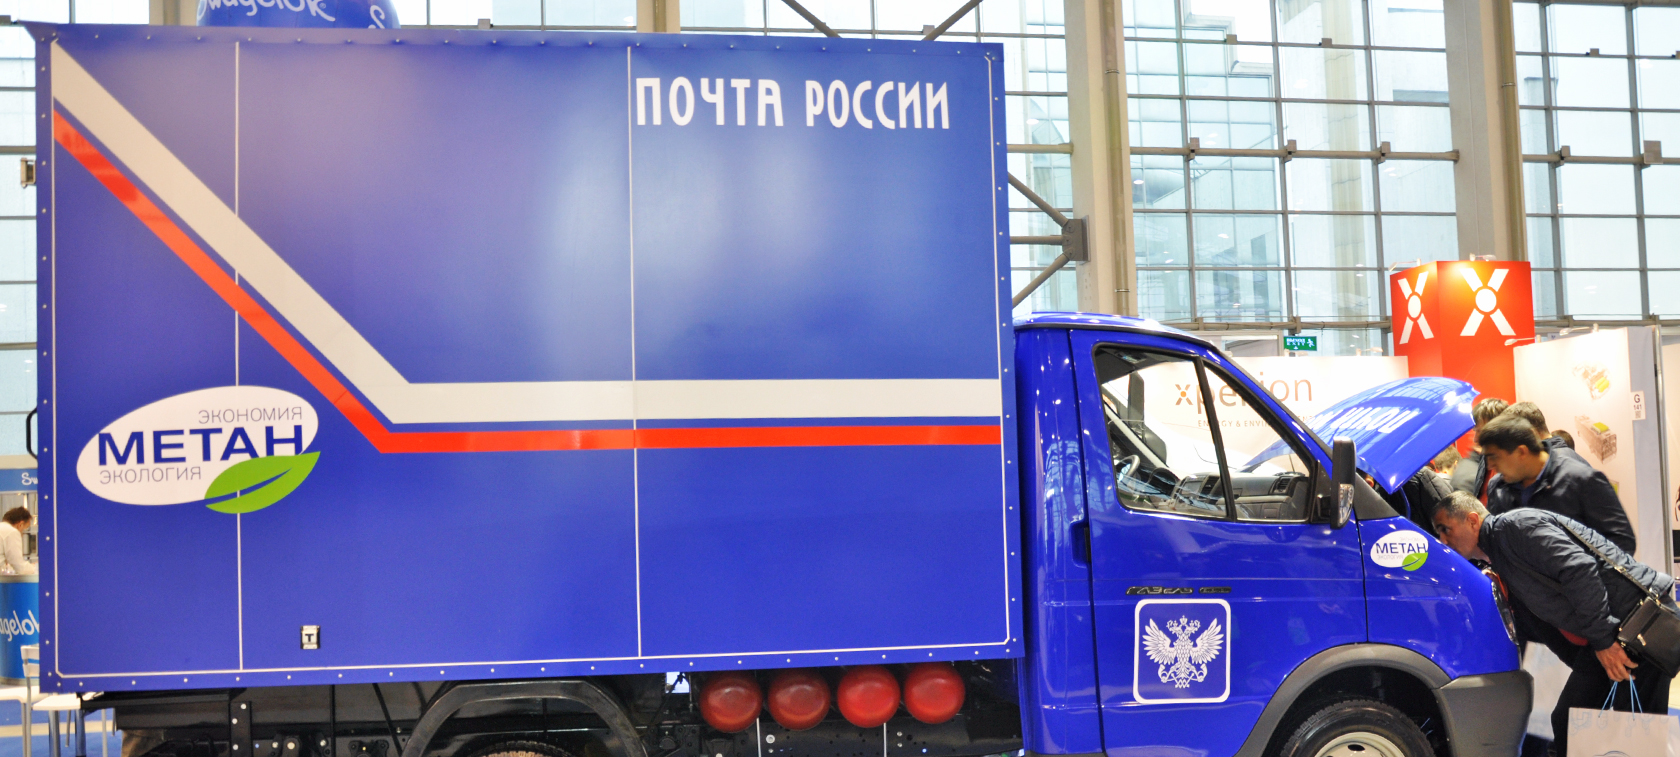 Rosja promuje samochody gazowe